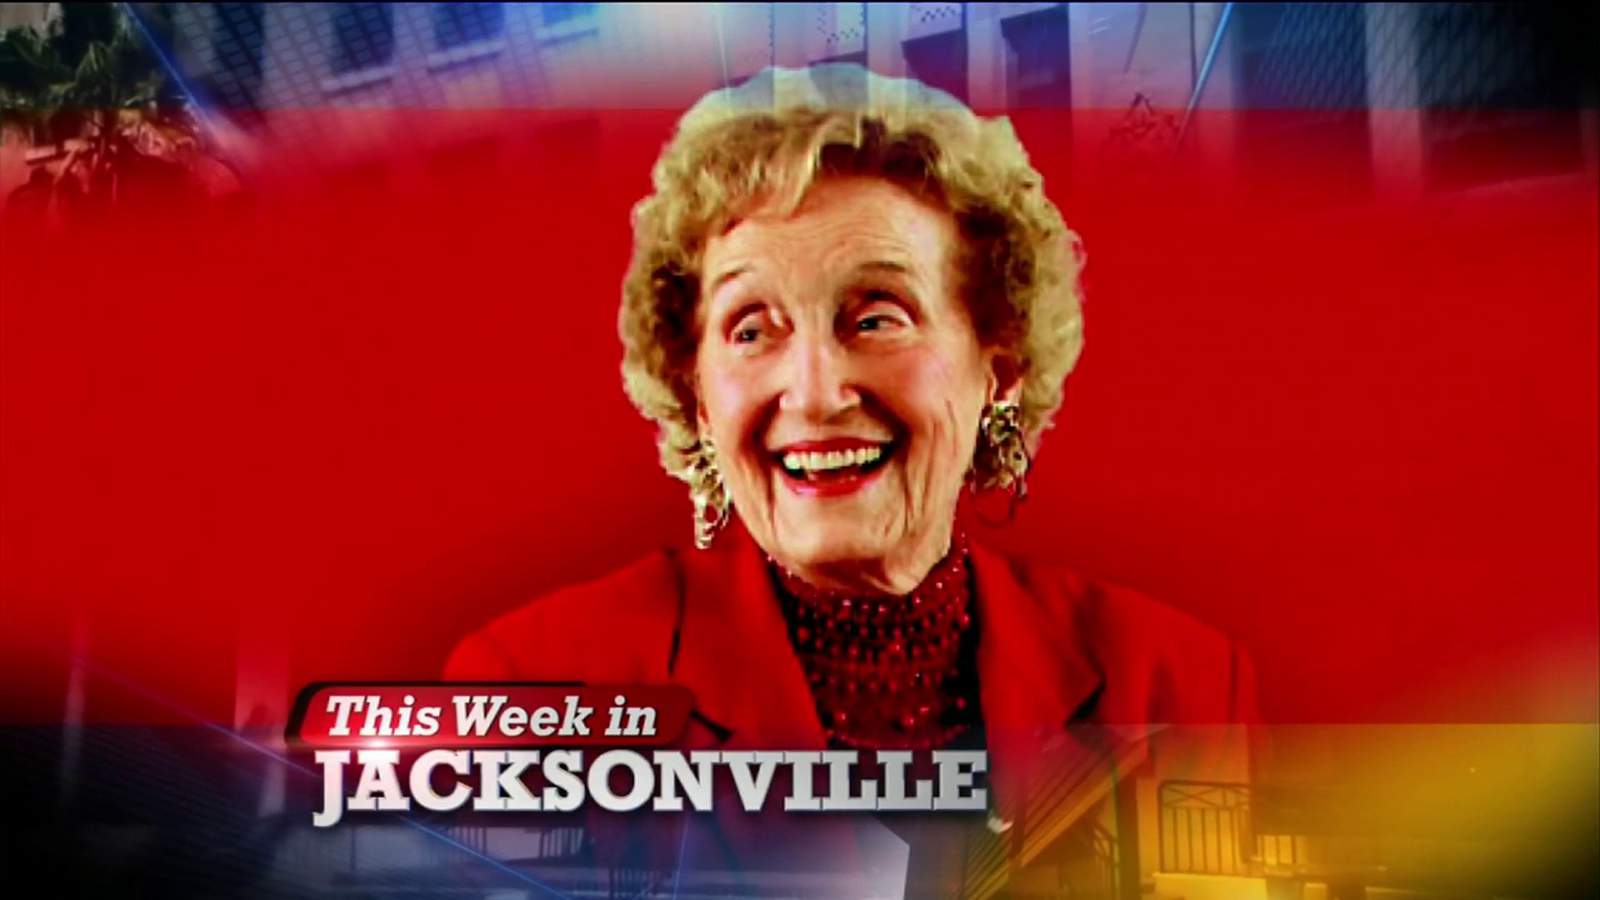 Remembering former Jacksonville University President Fran Kinne